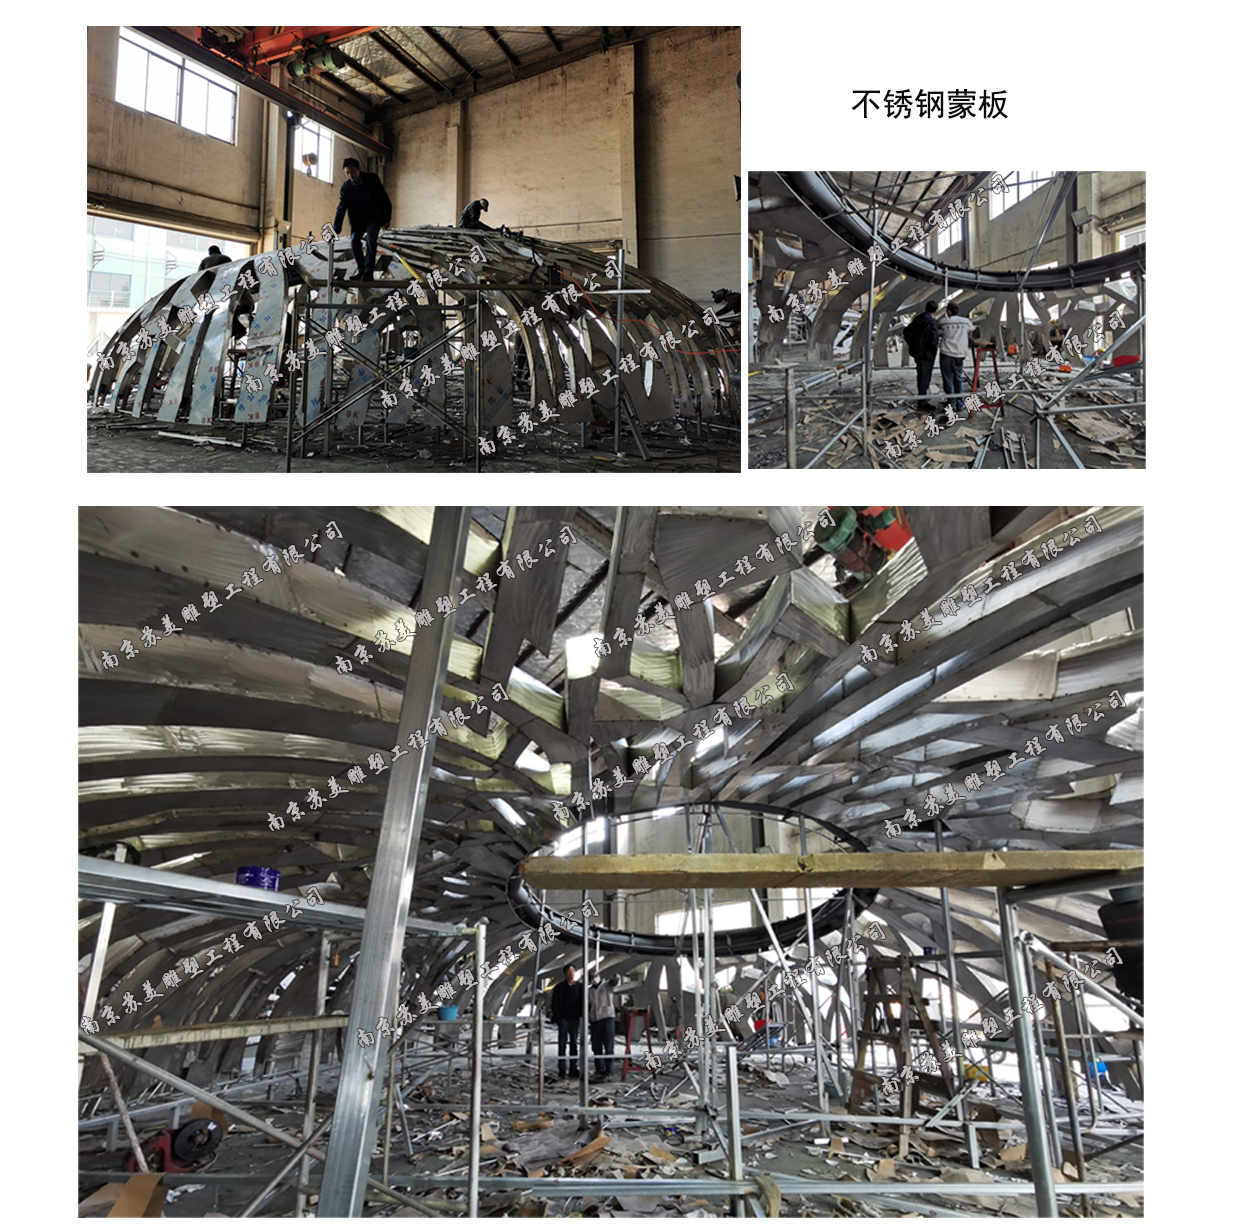 上海G60科创走廊起点雕塑不锈钢制作基本完成